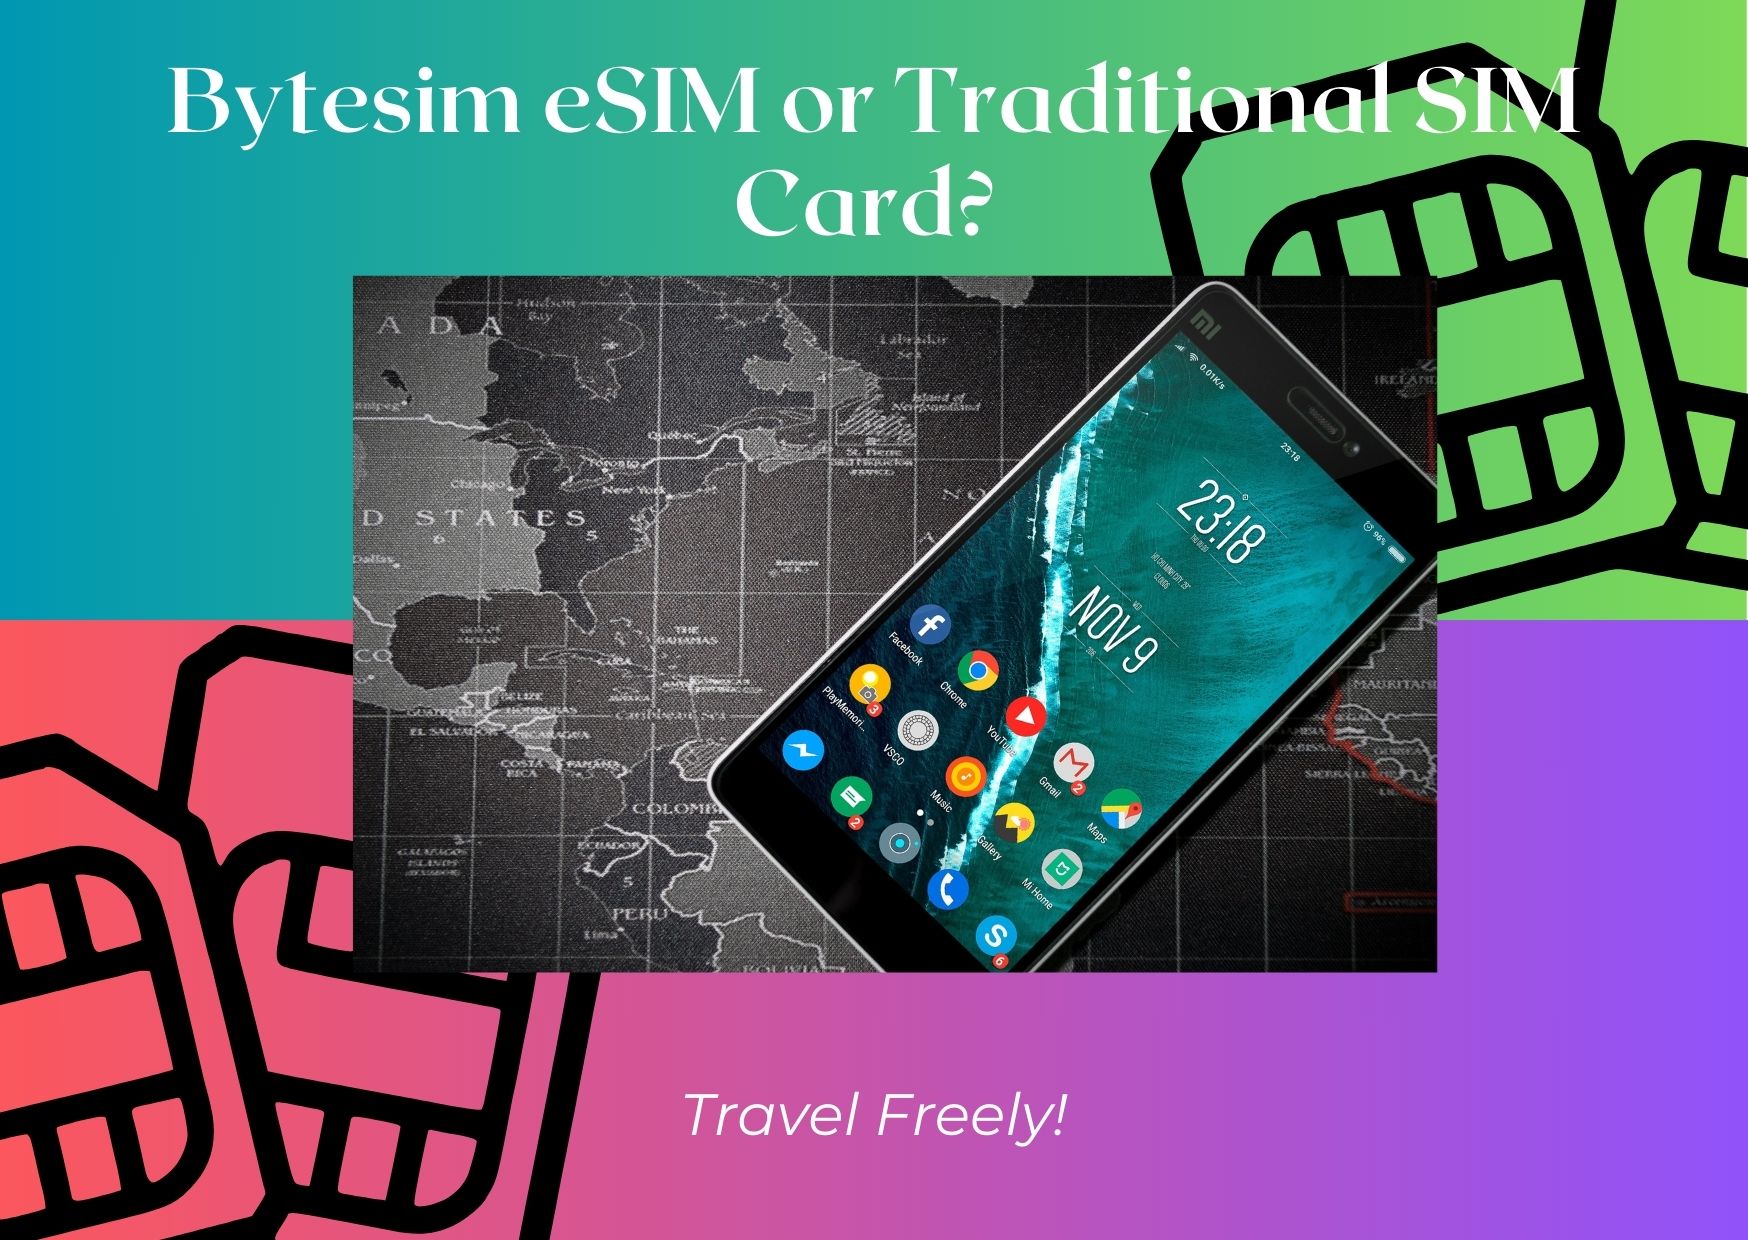 Bytesim eSIM vs. Traditional SIM cards – What Should You Choose?